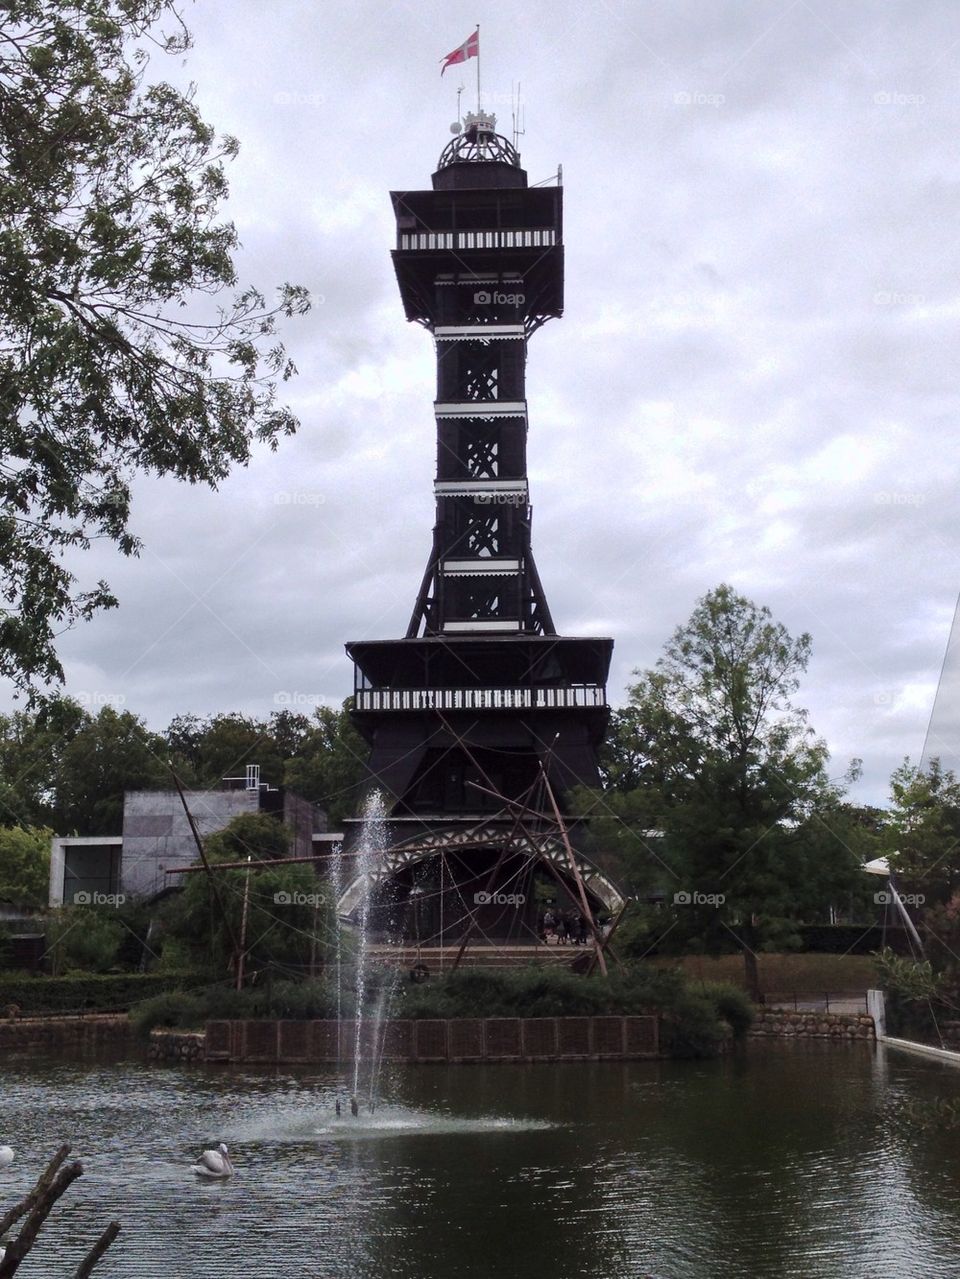 Zoo Tower